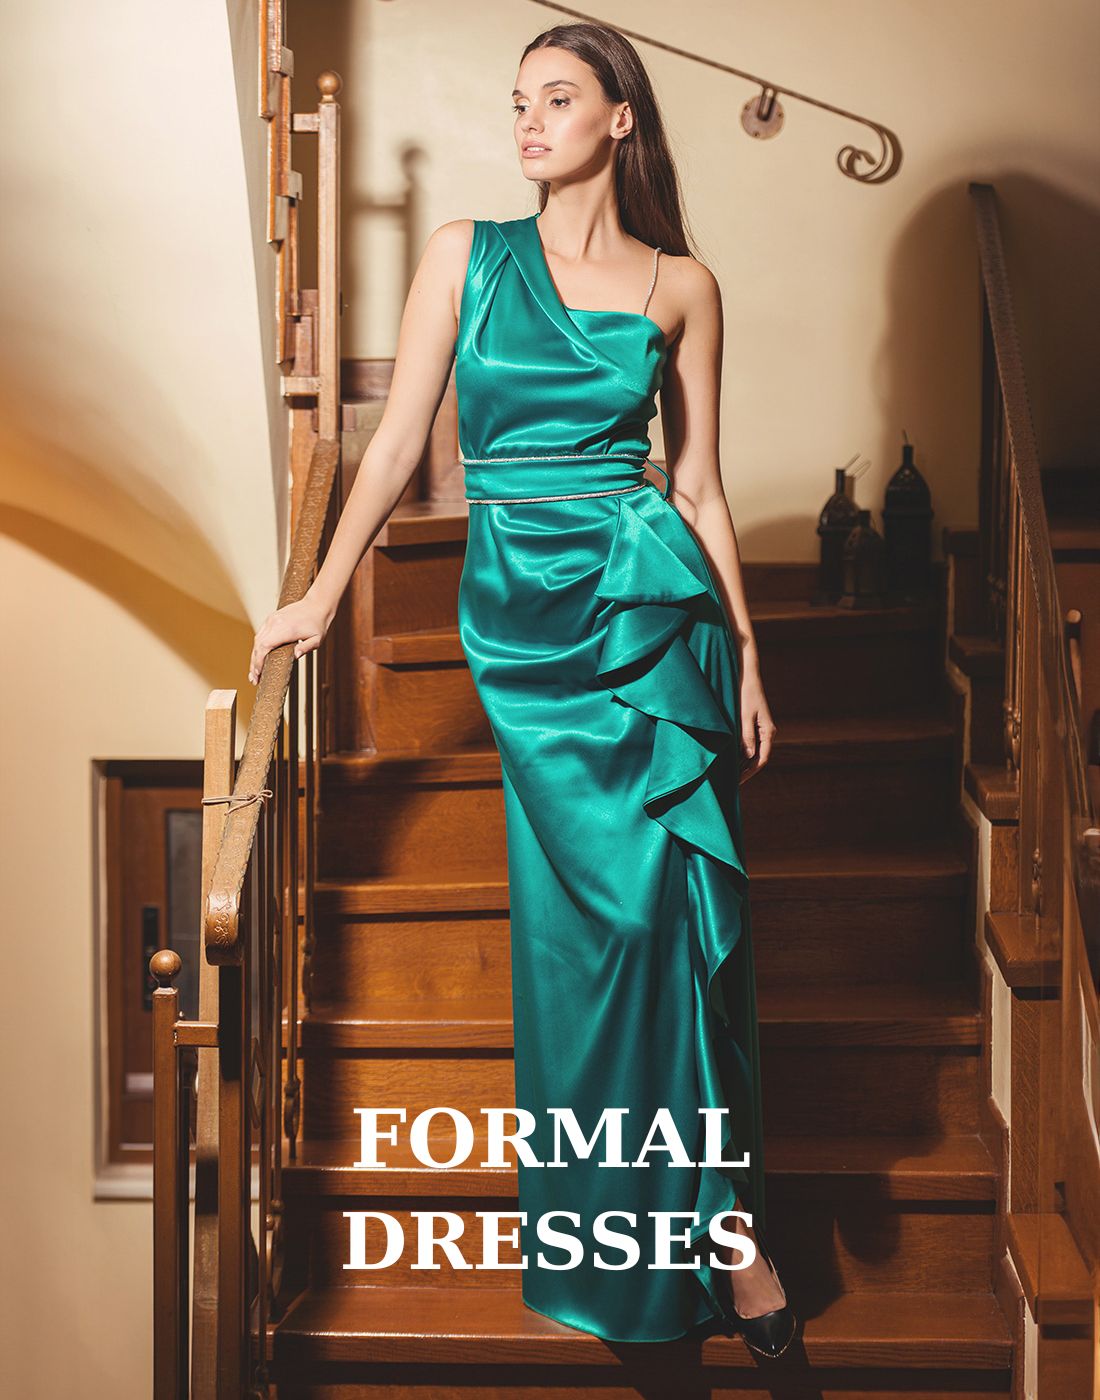 FORMAL DRESSES